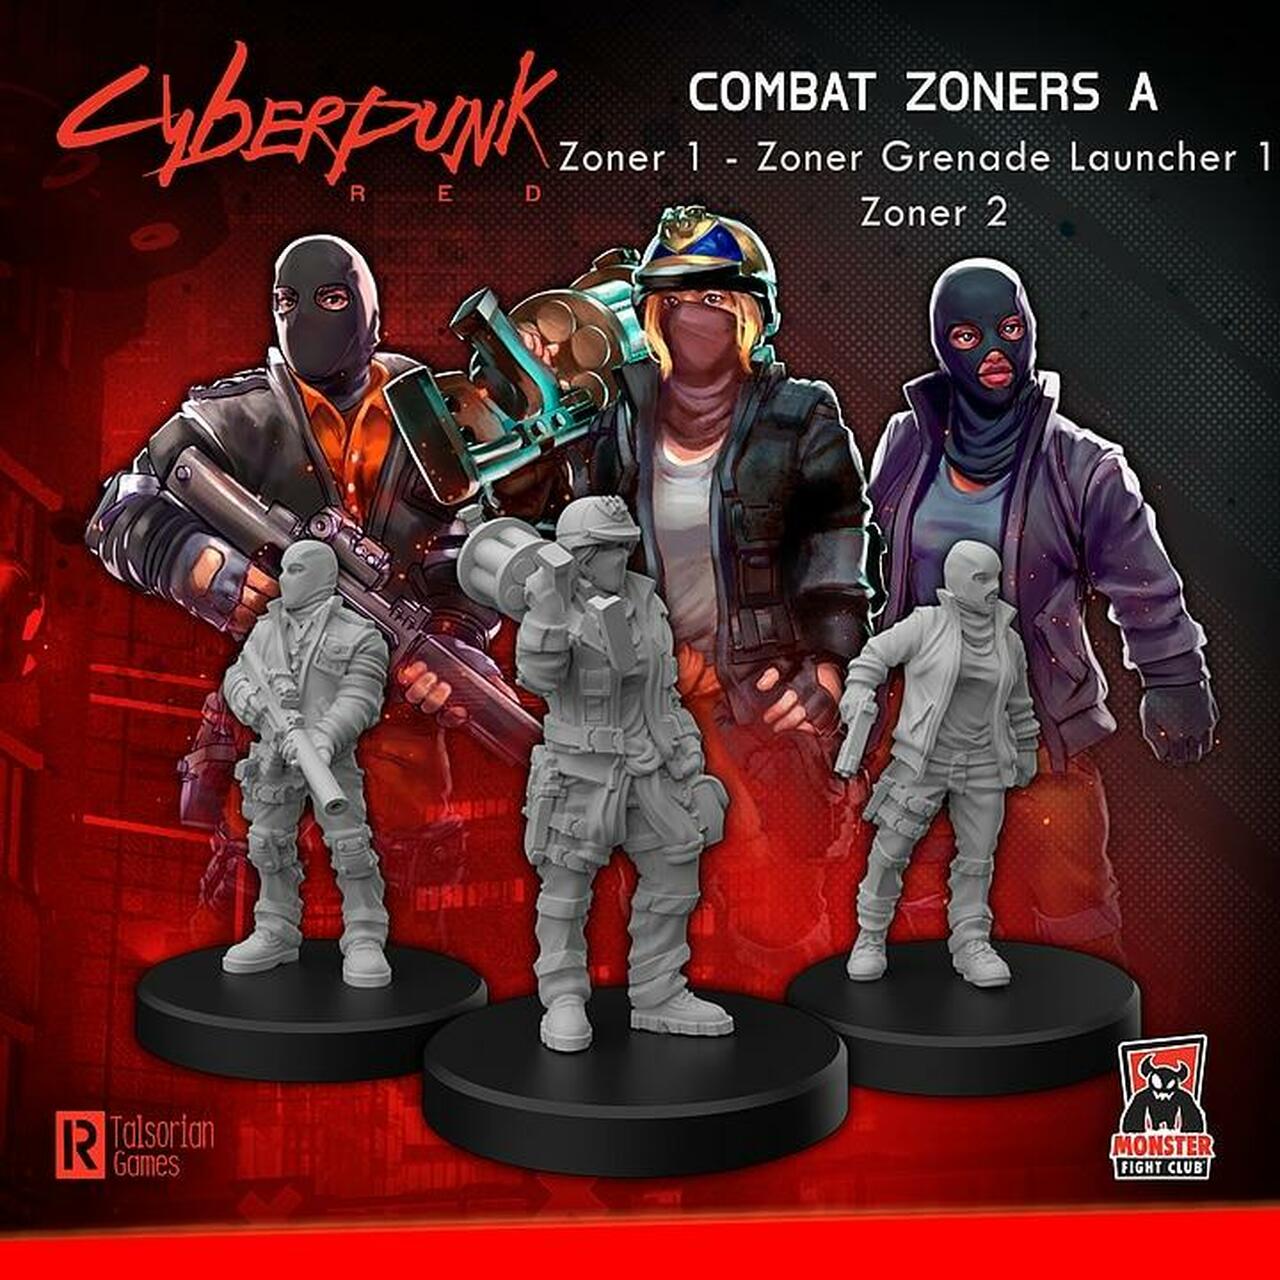 Cyberpunk Red: Combat Zoners - Heavies